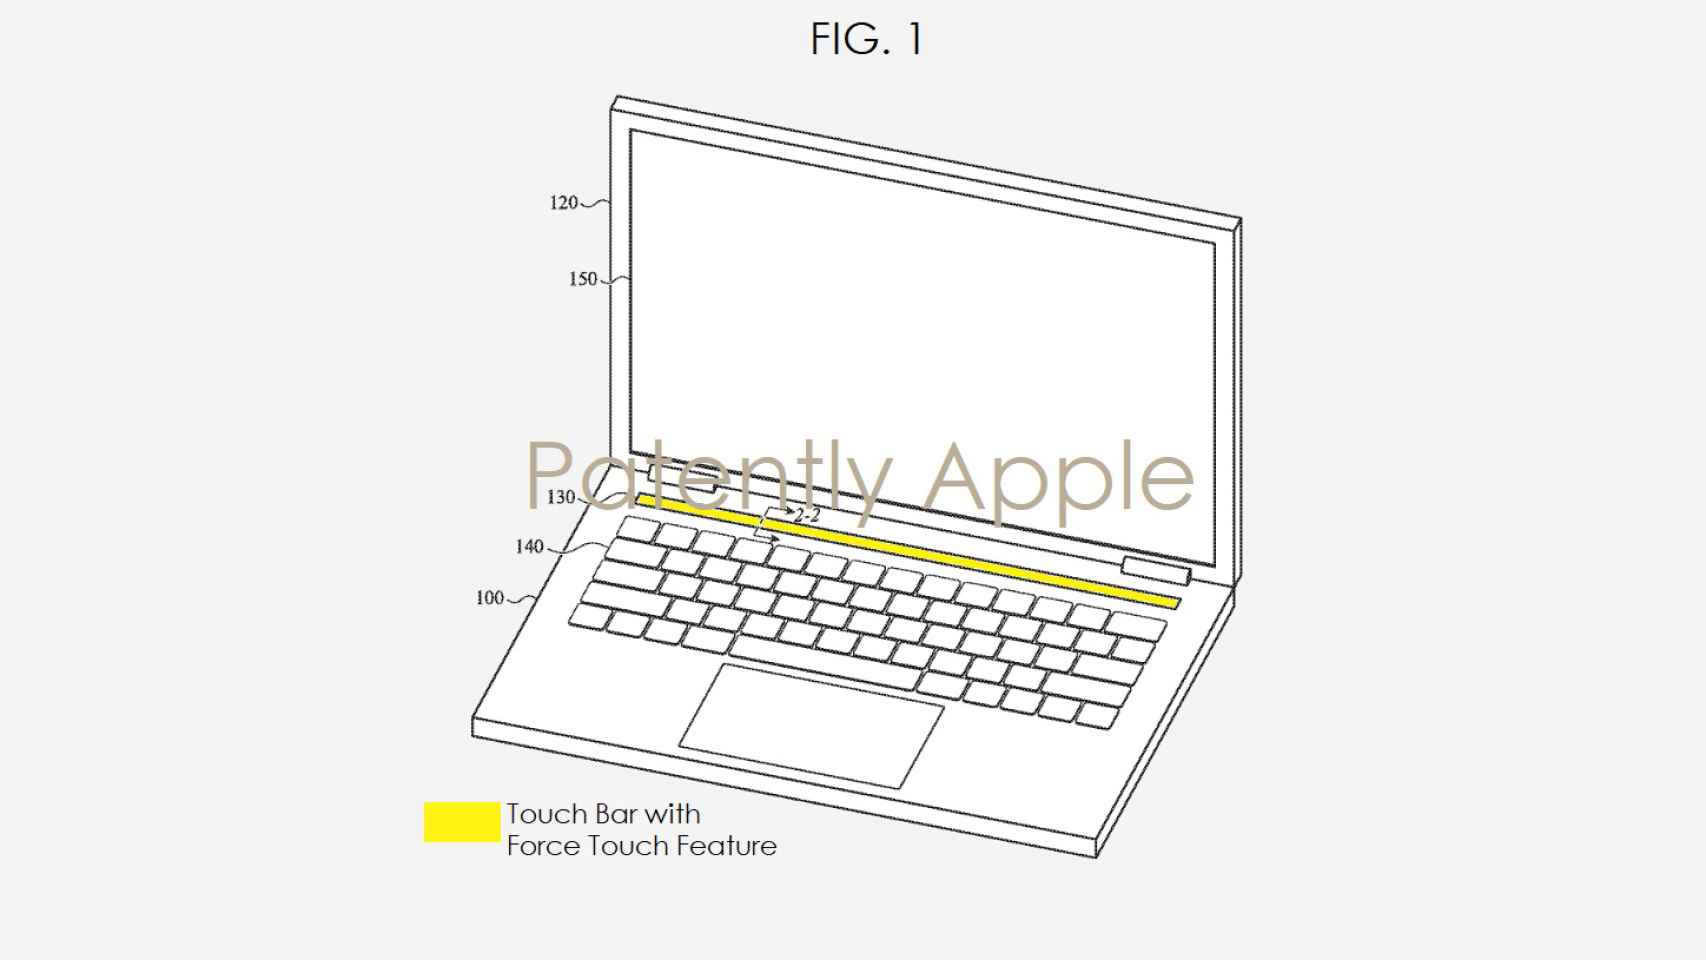 Patente de Apple